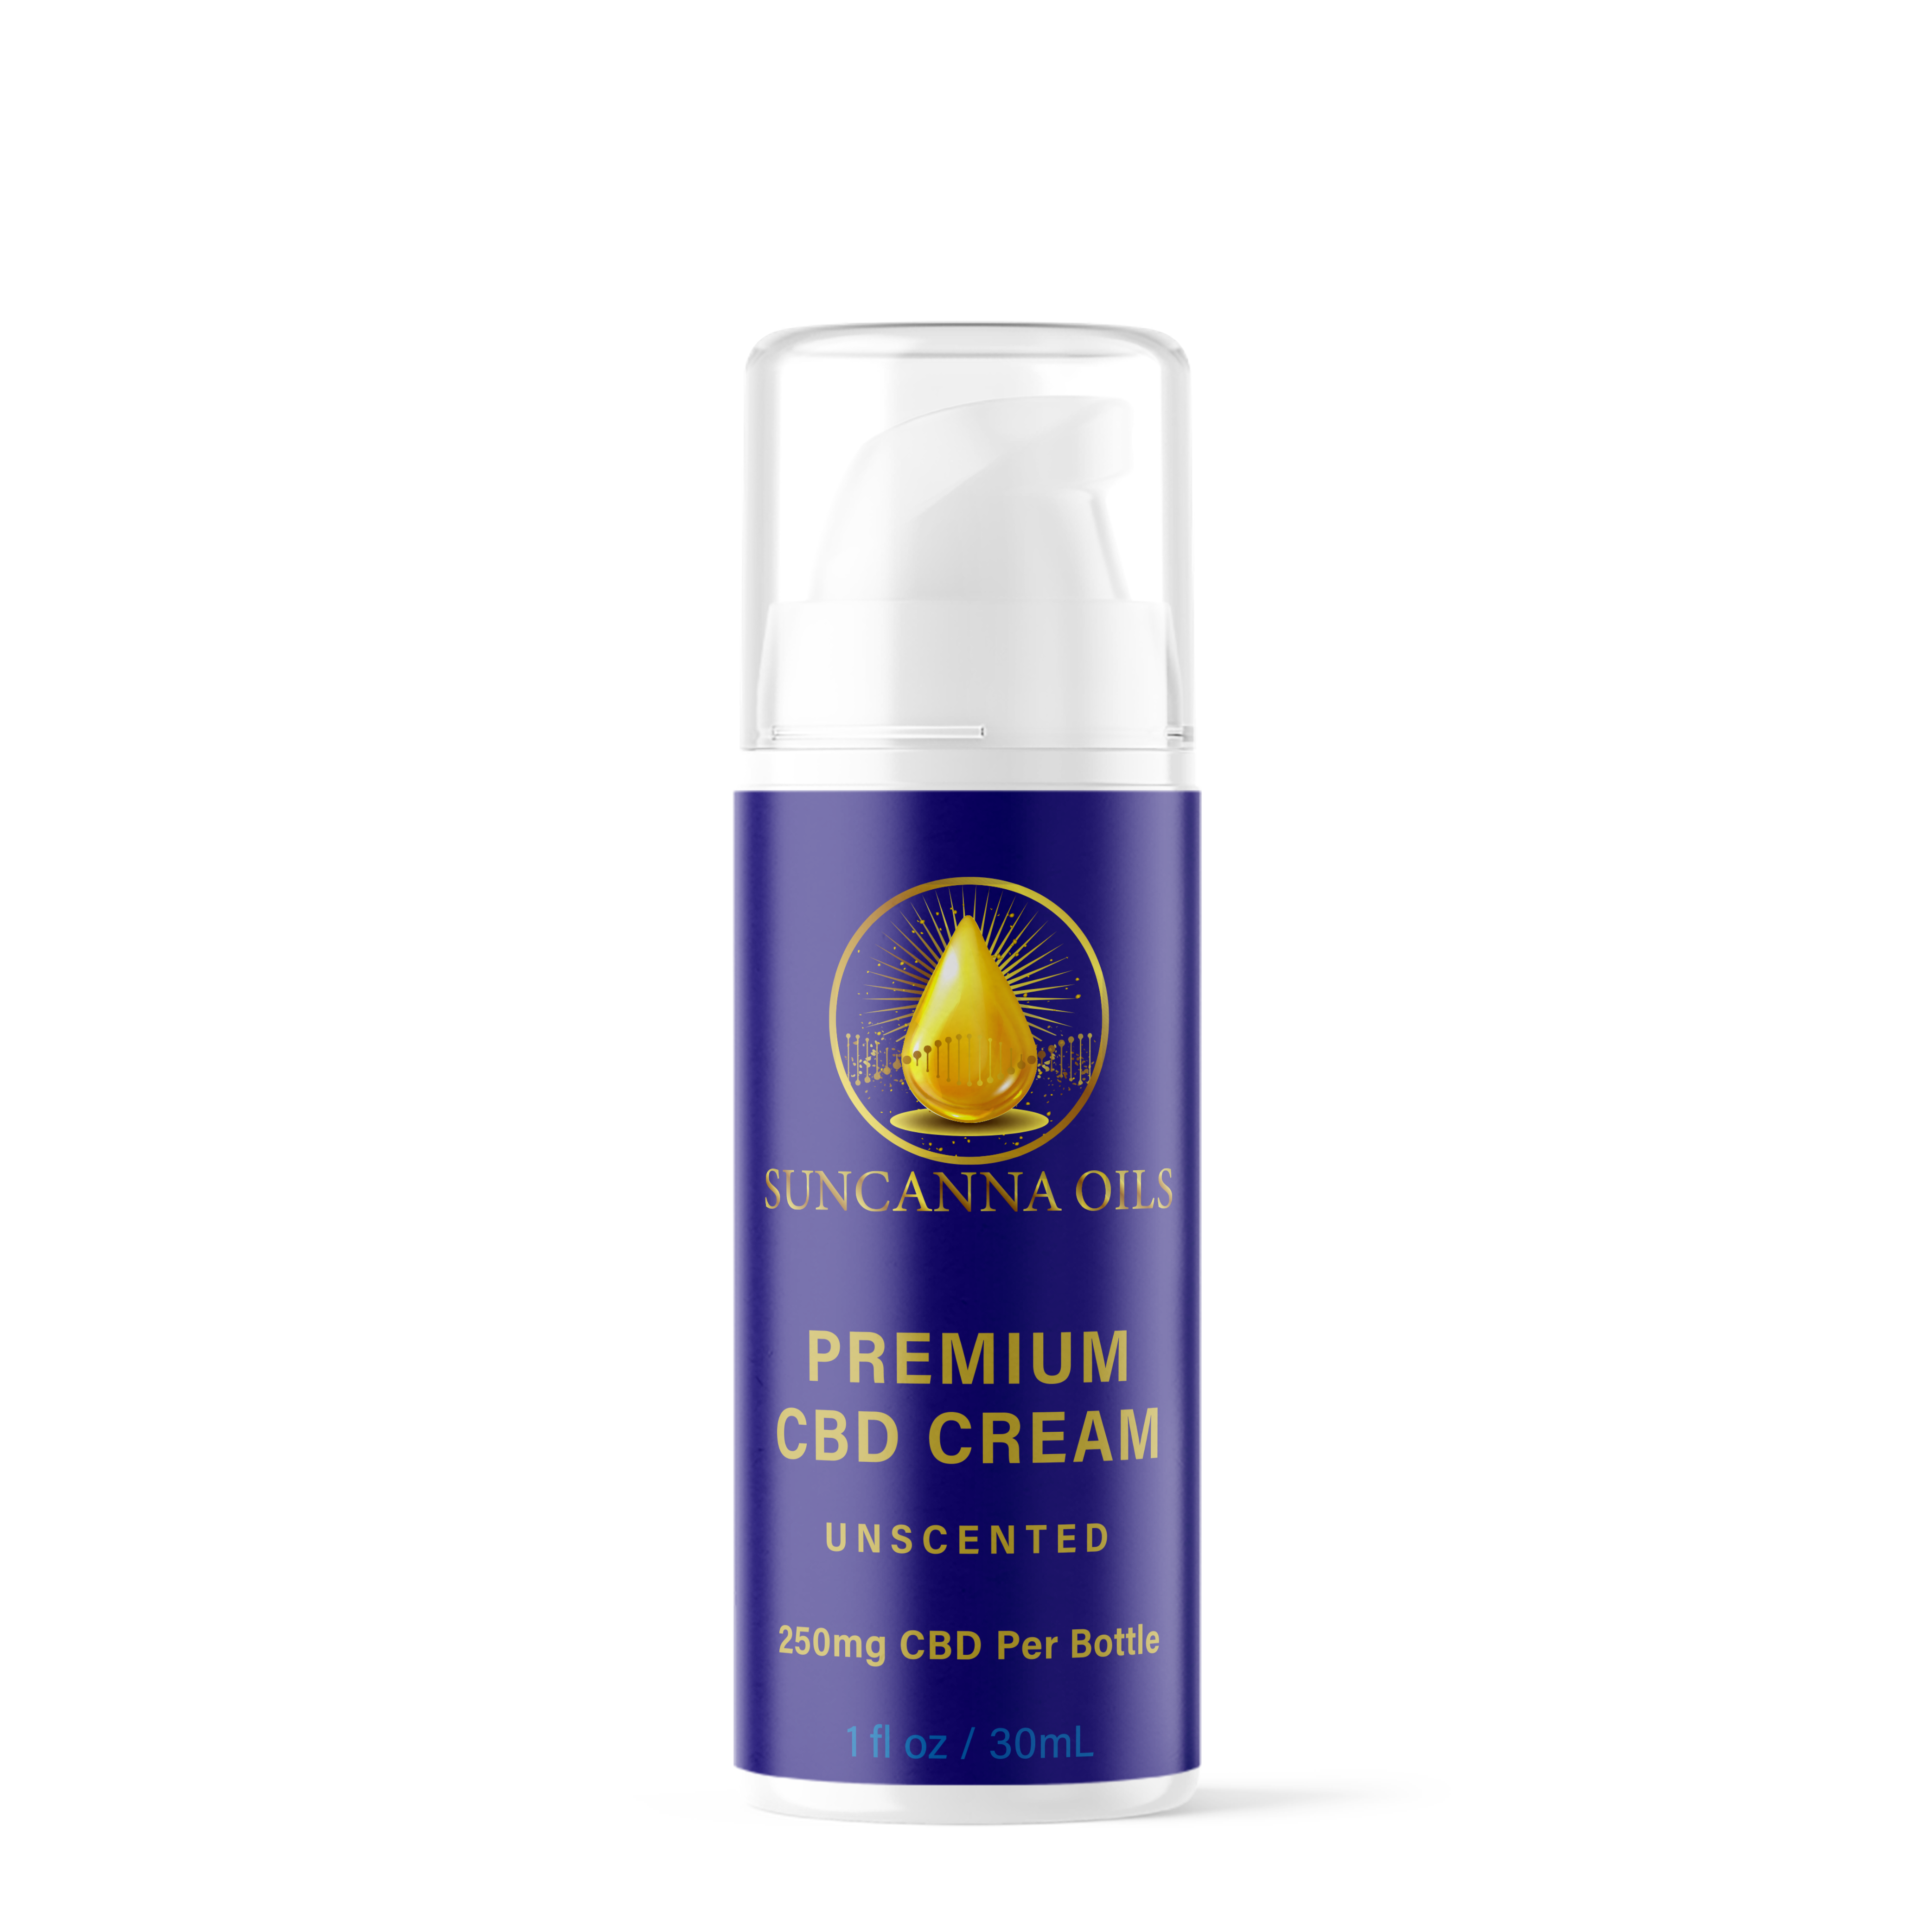 Suncanna Oils Premium CBD Cream